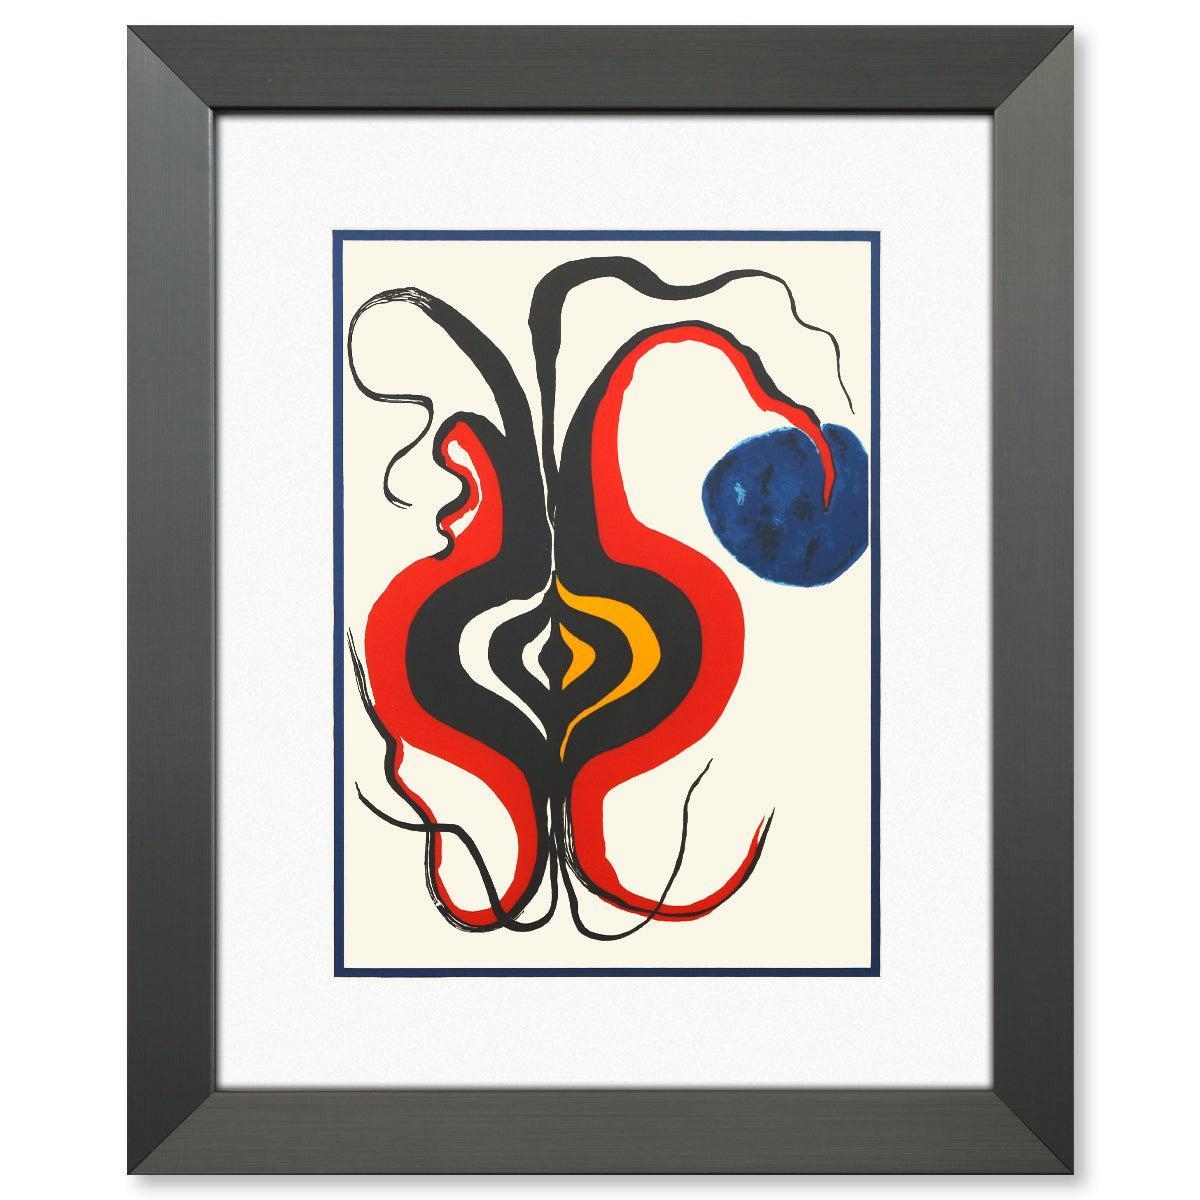 DLM156 - BULBE - Alexander Calder